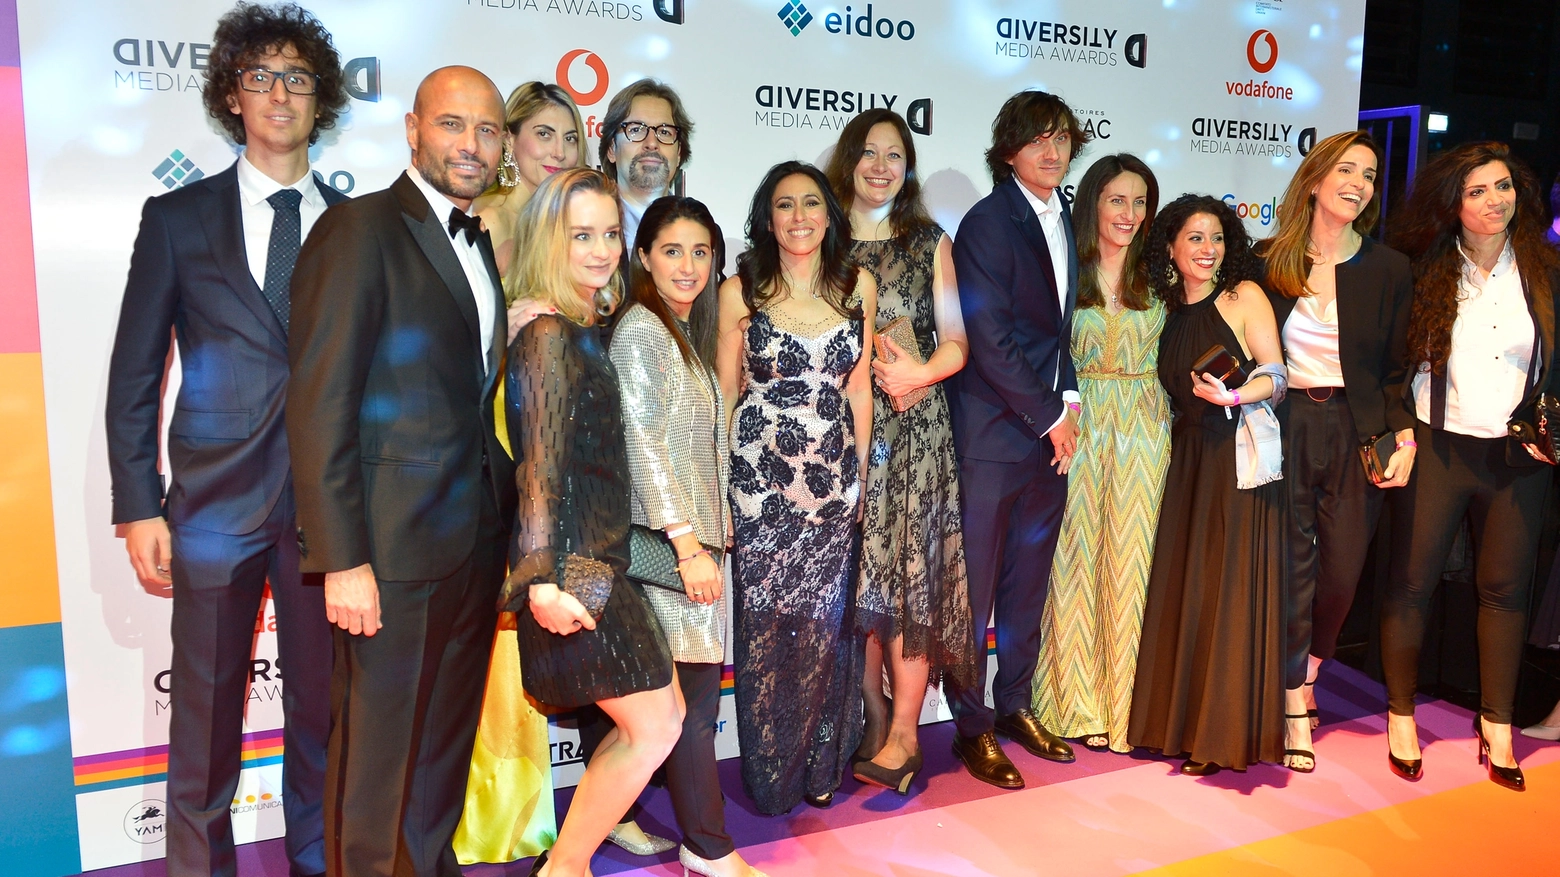 Diversity Media Awards a Milano